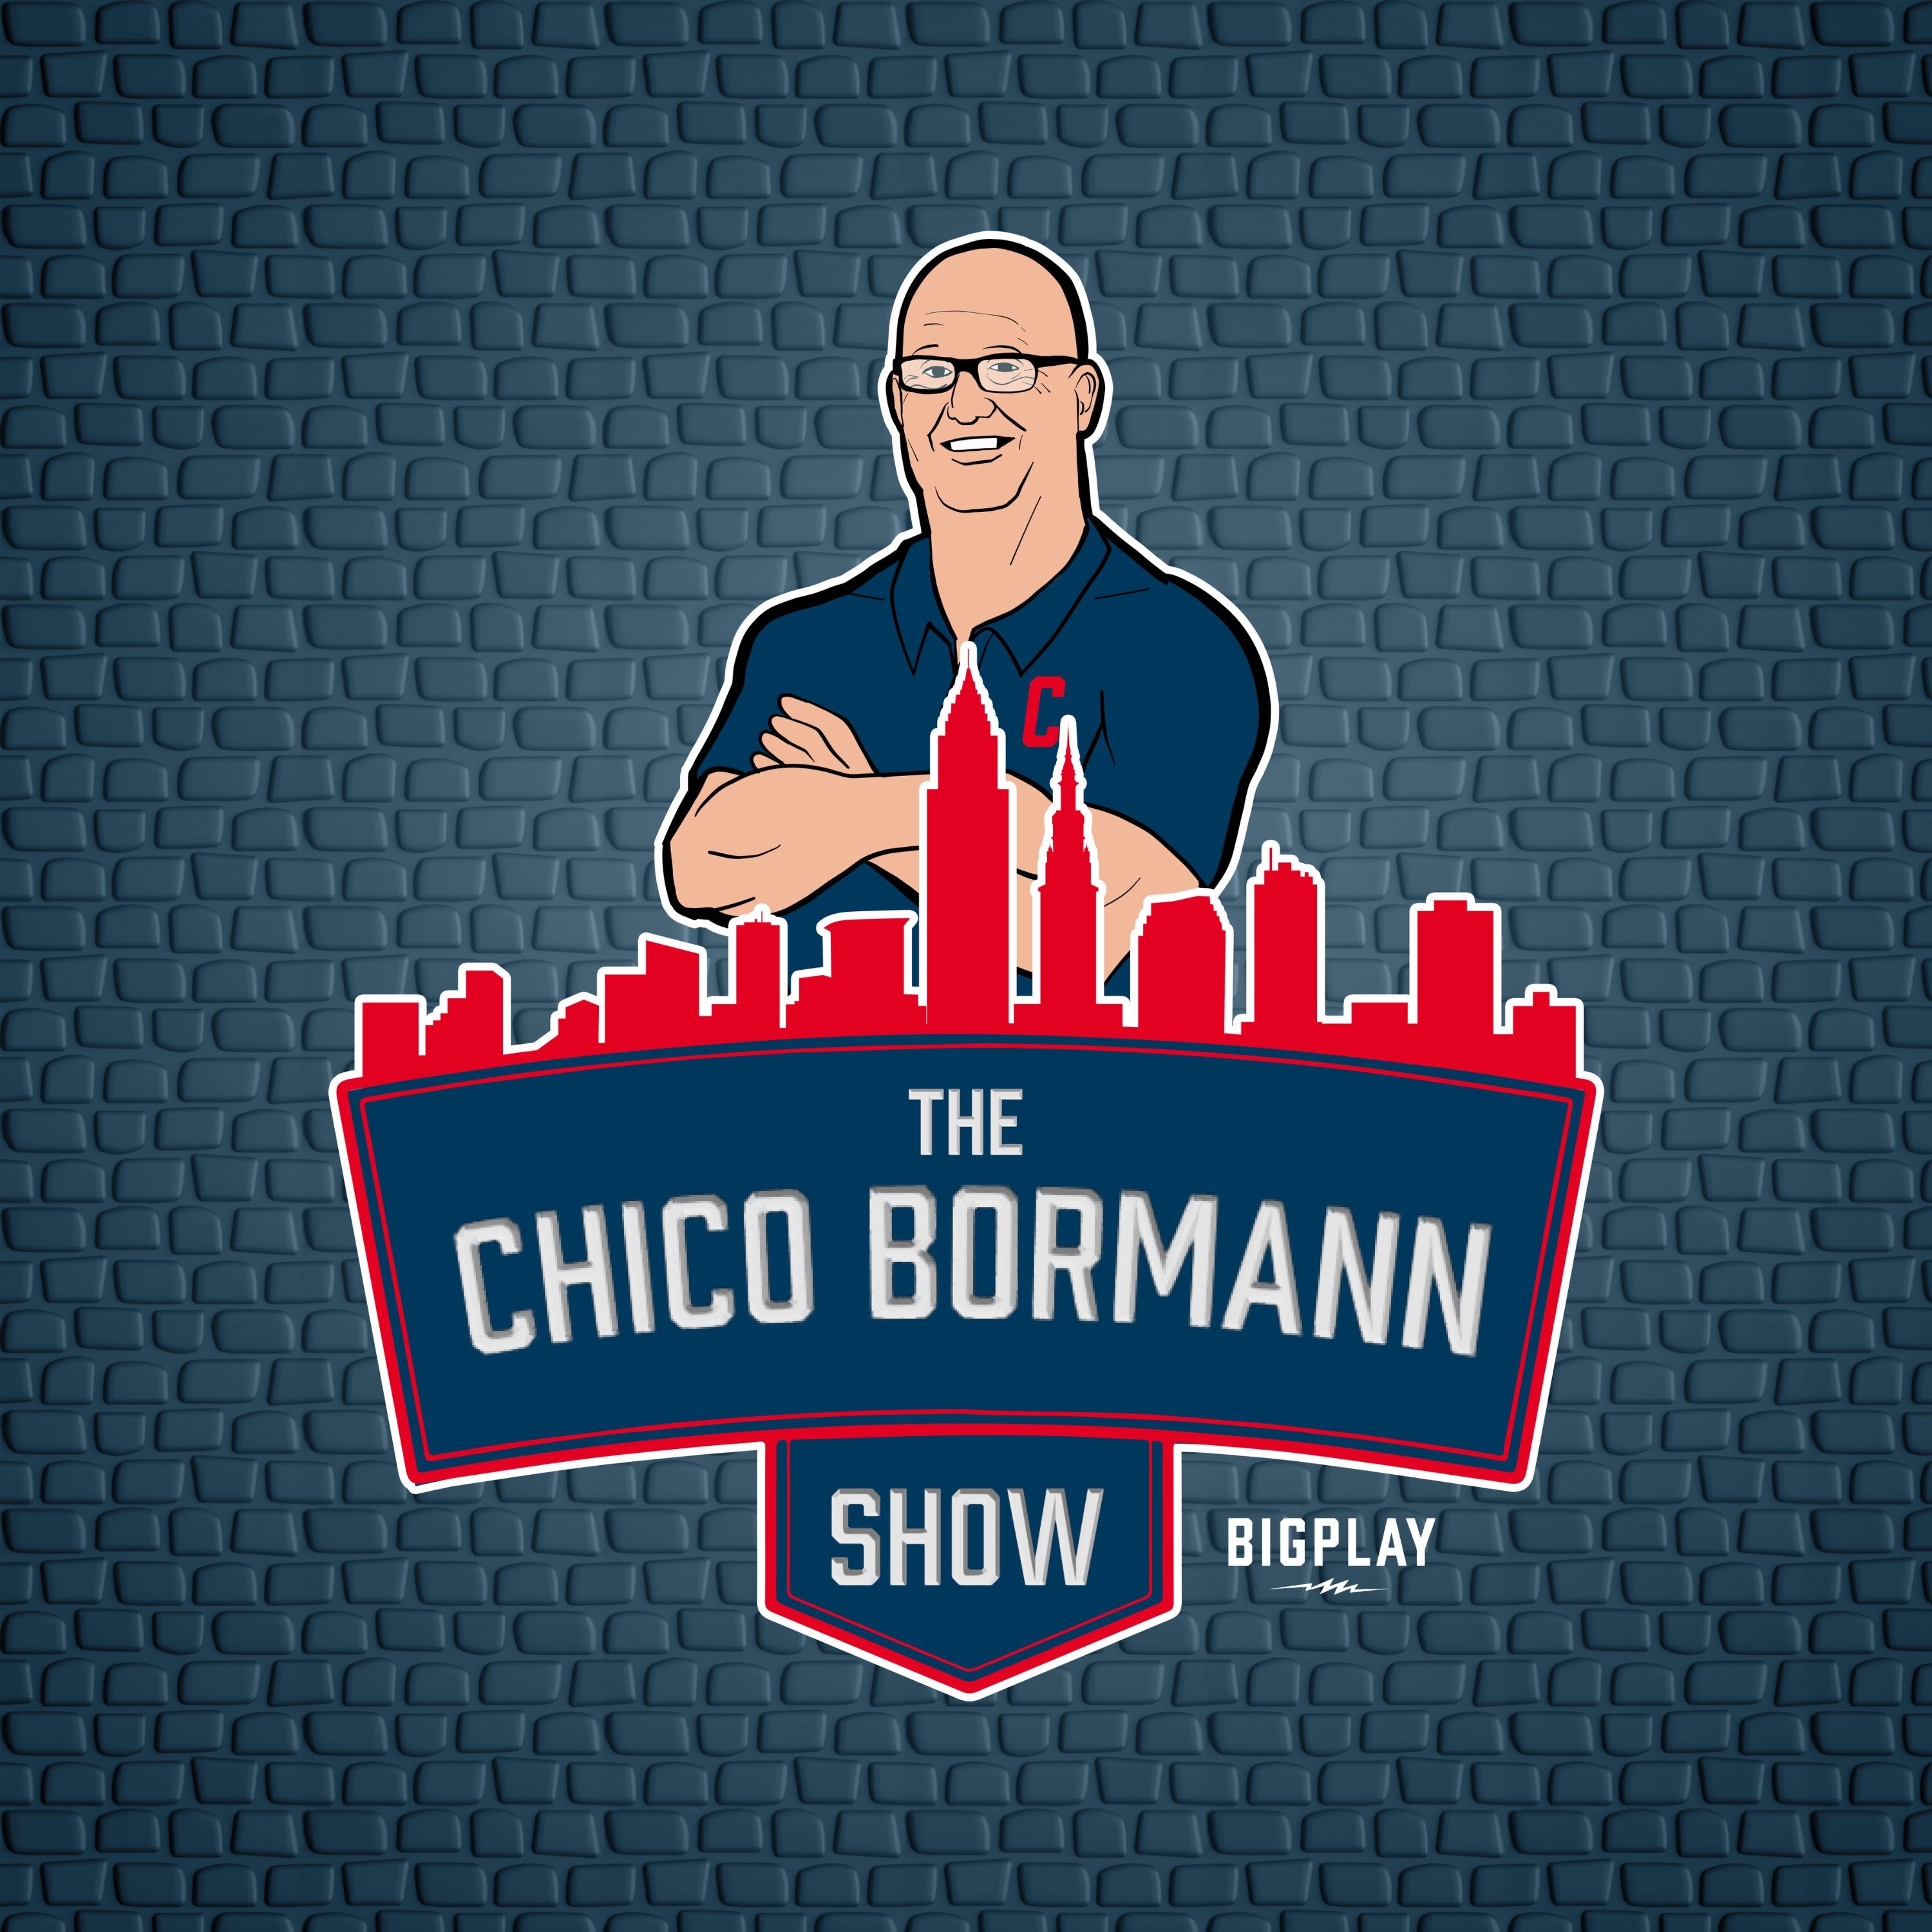 The Chico Bormann Show